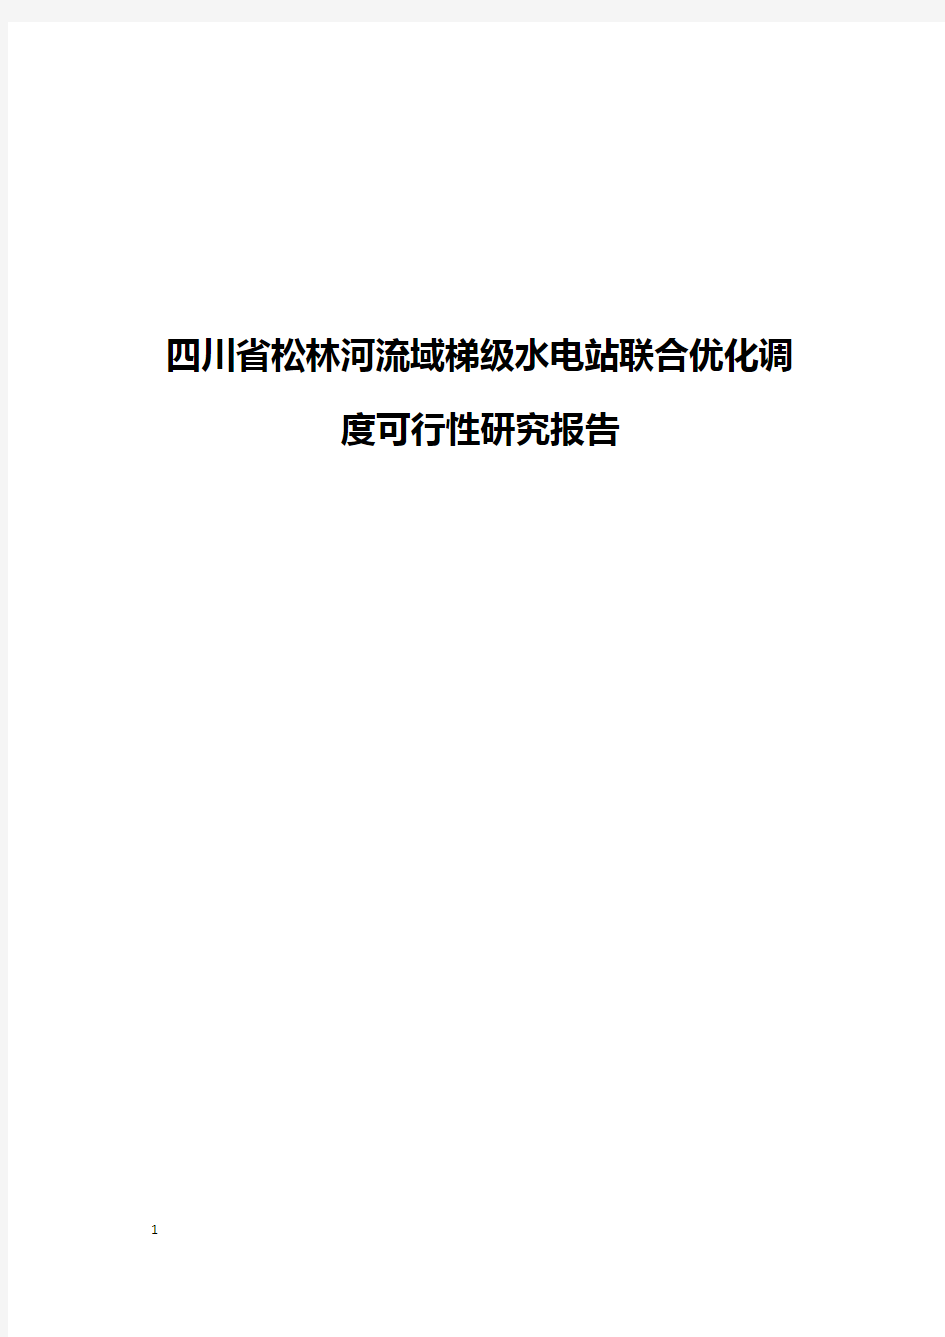 四川省松林河流域梯级水电站联合优化调度可行性研究报告